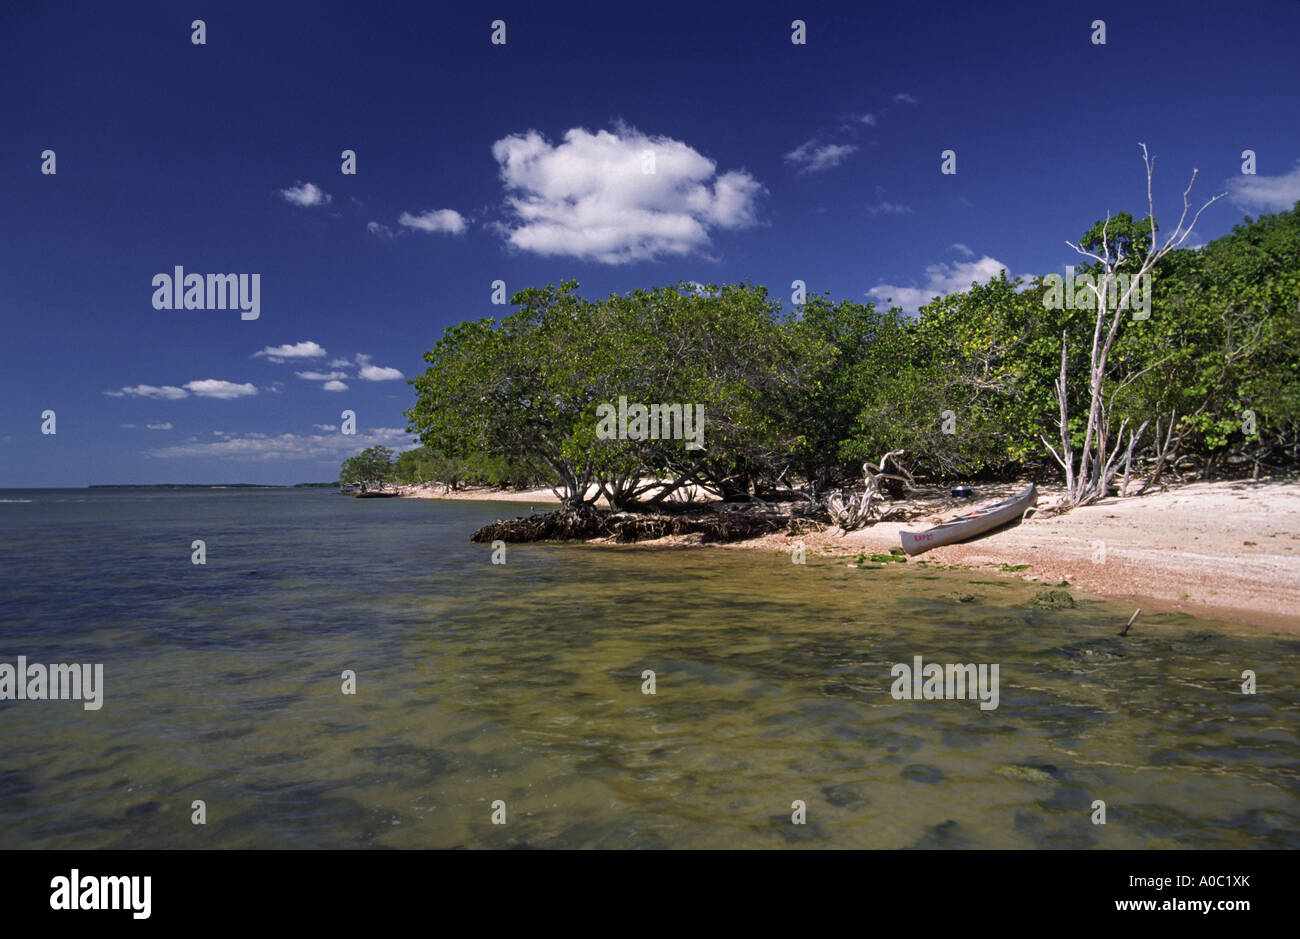 Beach at Jewel Key, Ten Thousand Islands area, Everglades Nat Park, Florida, USA Stock Photo